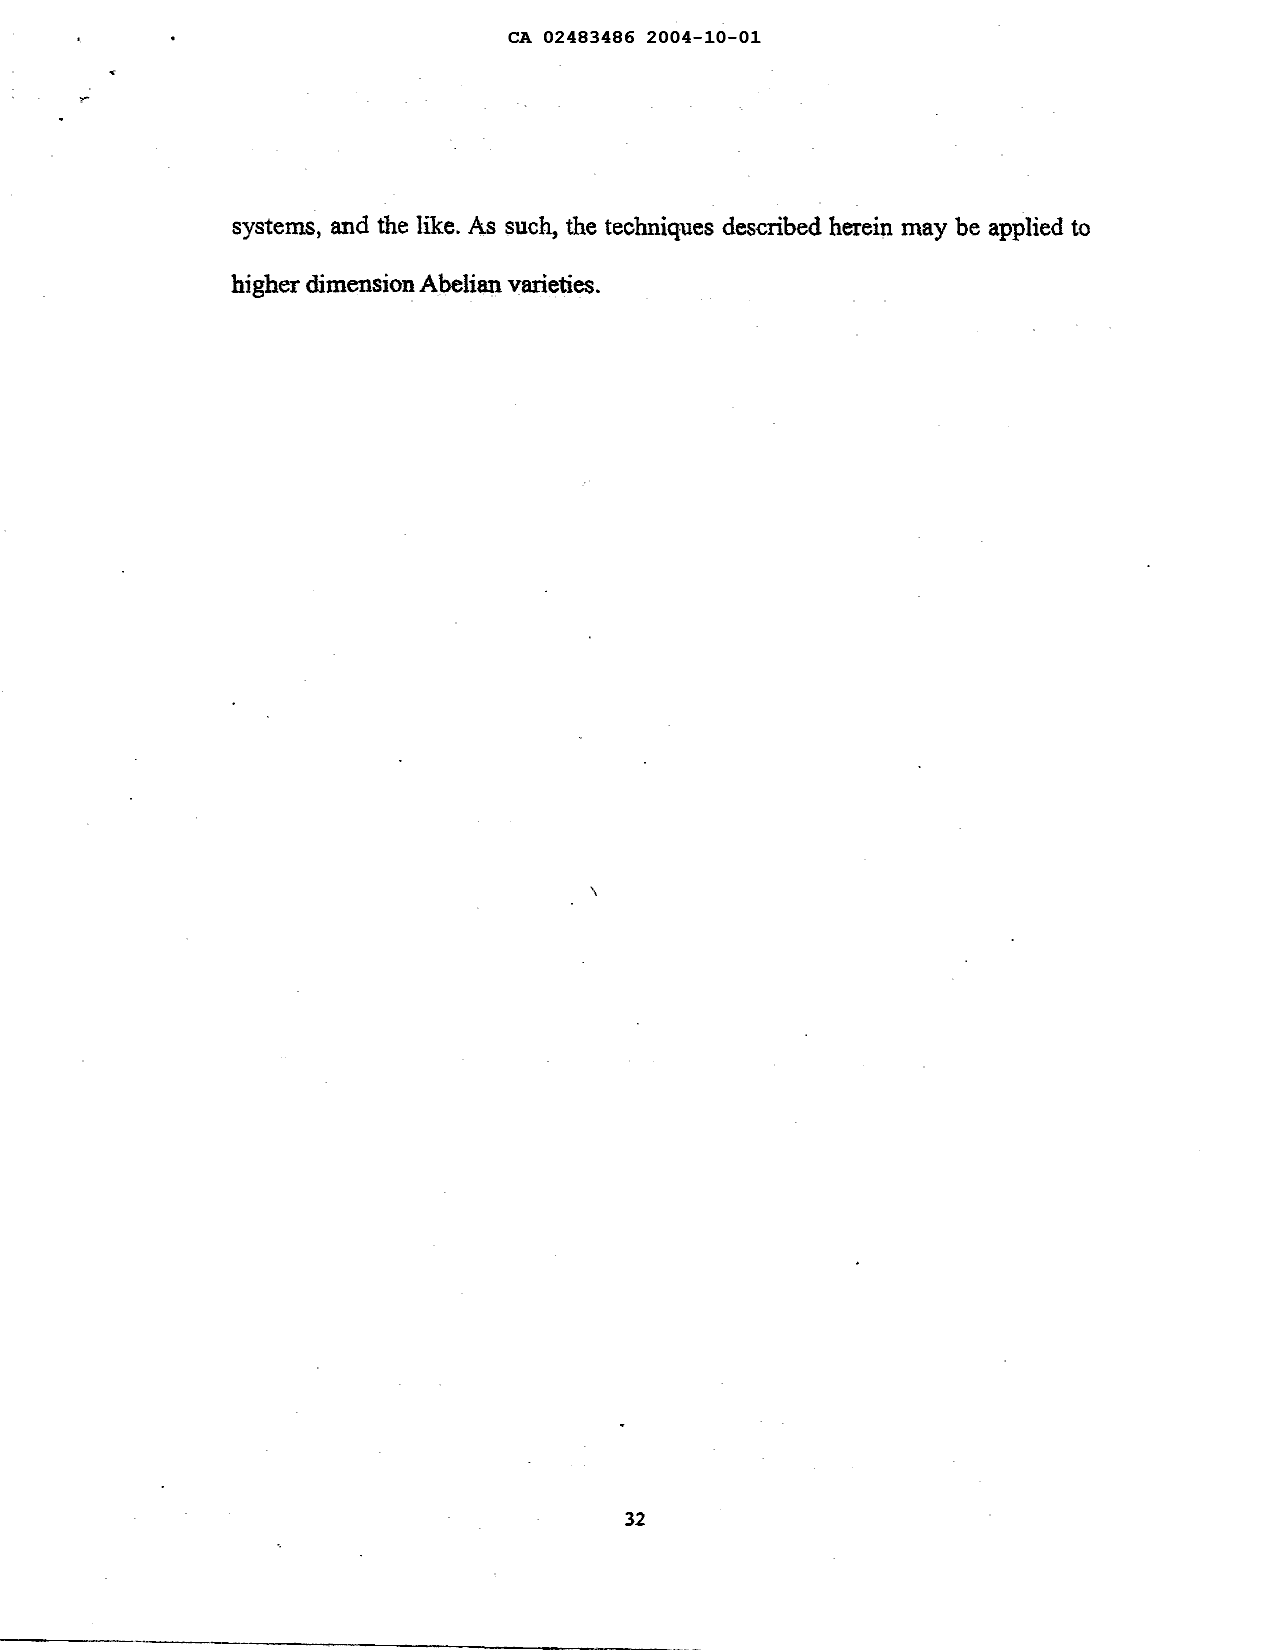 Canadian Patent Document 2483486. Description 20091001. Image 35 of 35